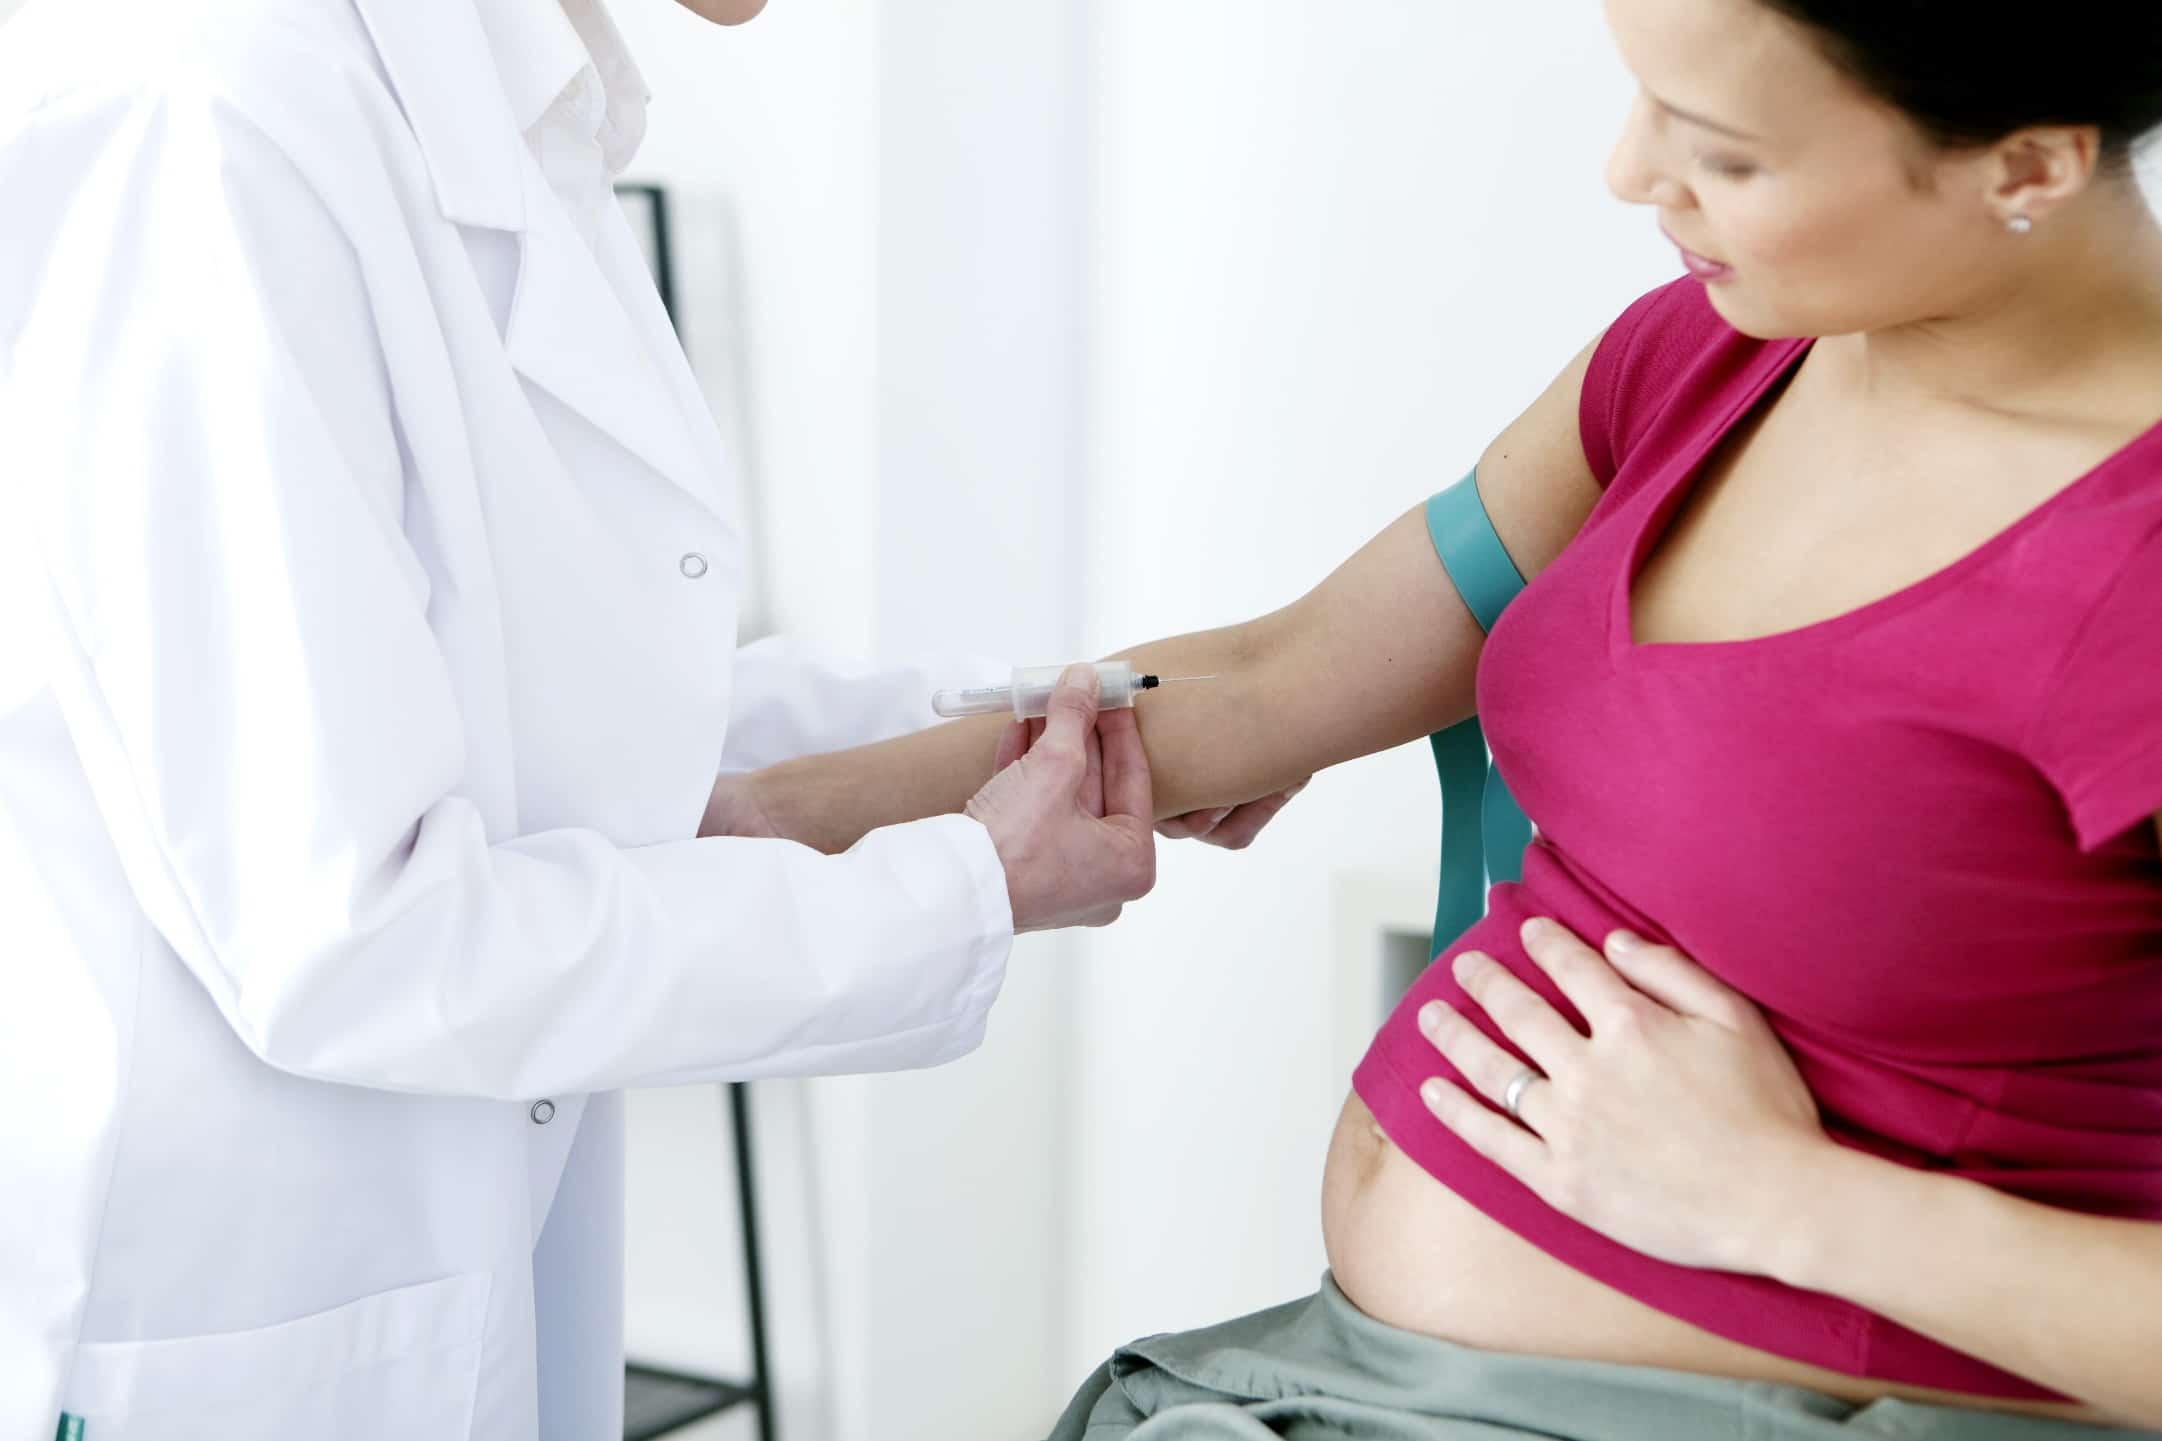 آزمایش بارداری | آزمایشگاه آنلاین آزماتو